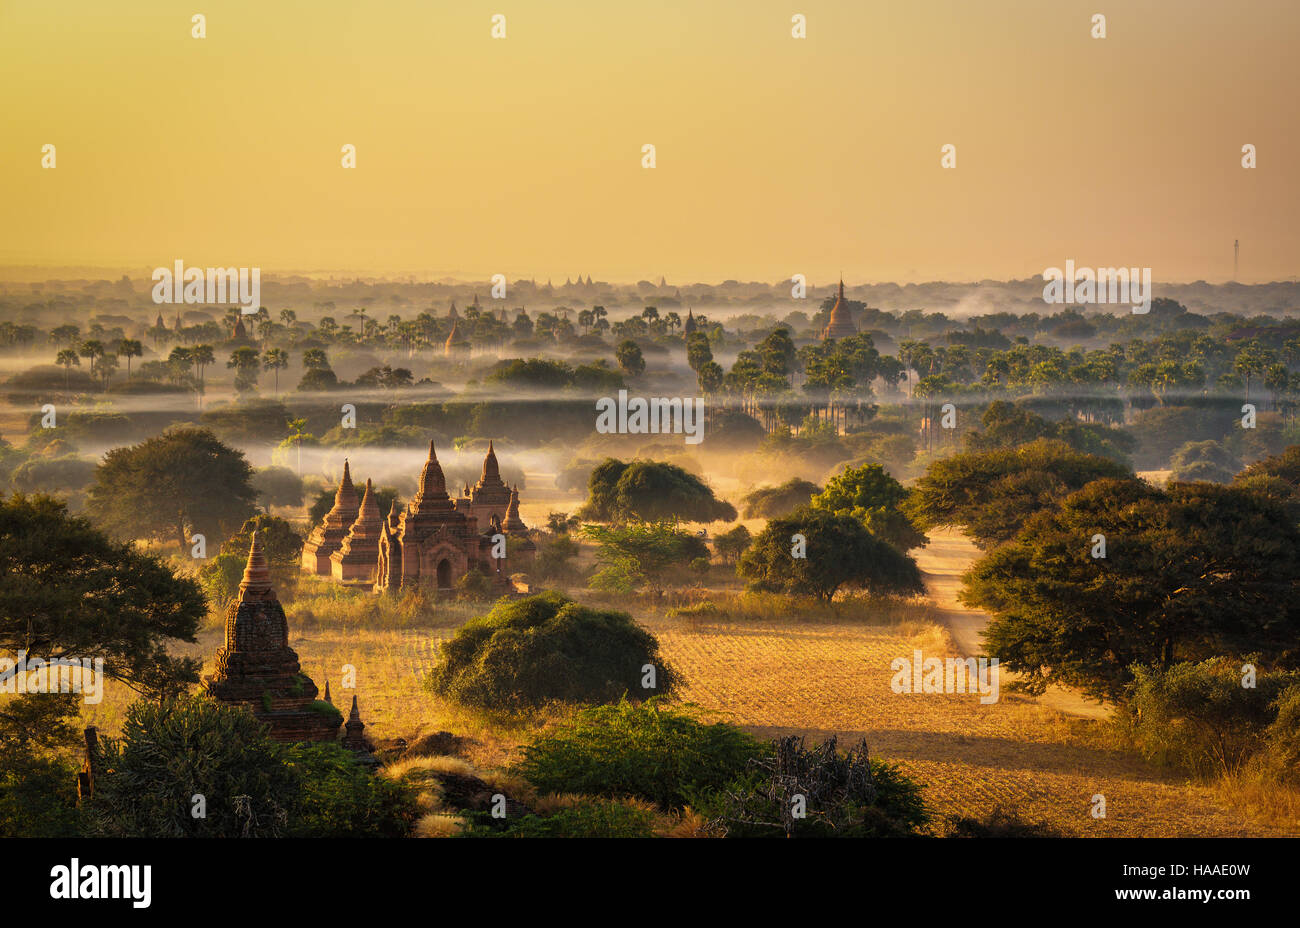 Lever du soleil au-dessus de Bagan au Myanmar. Bagan est une ville ancienne avec des milliers de temples bouddhistes et stupas. Banque D'Images